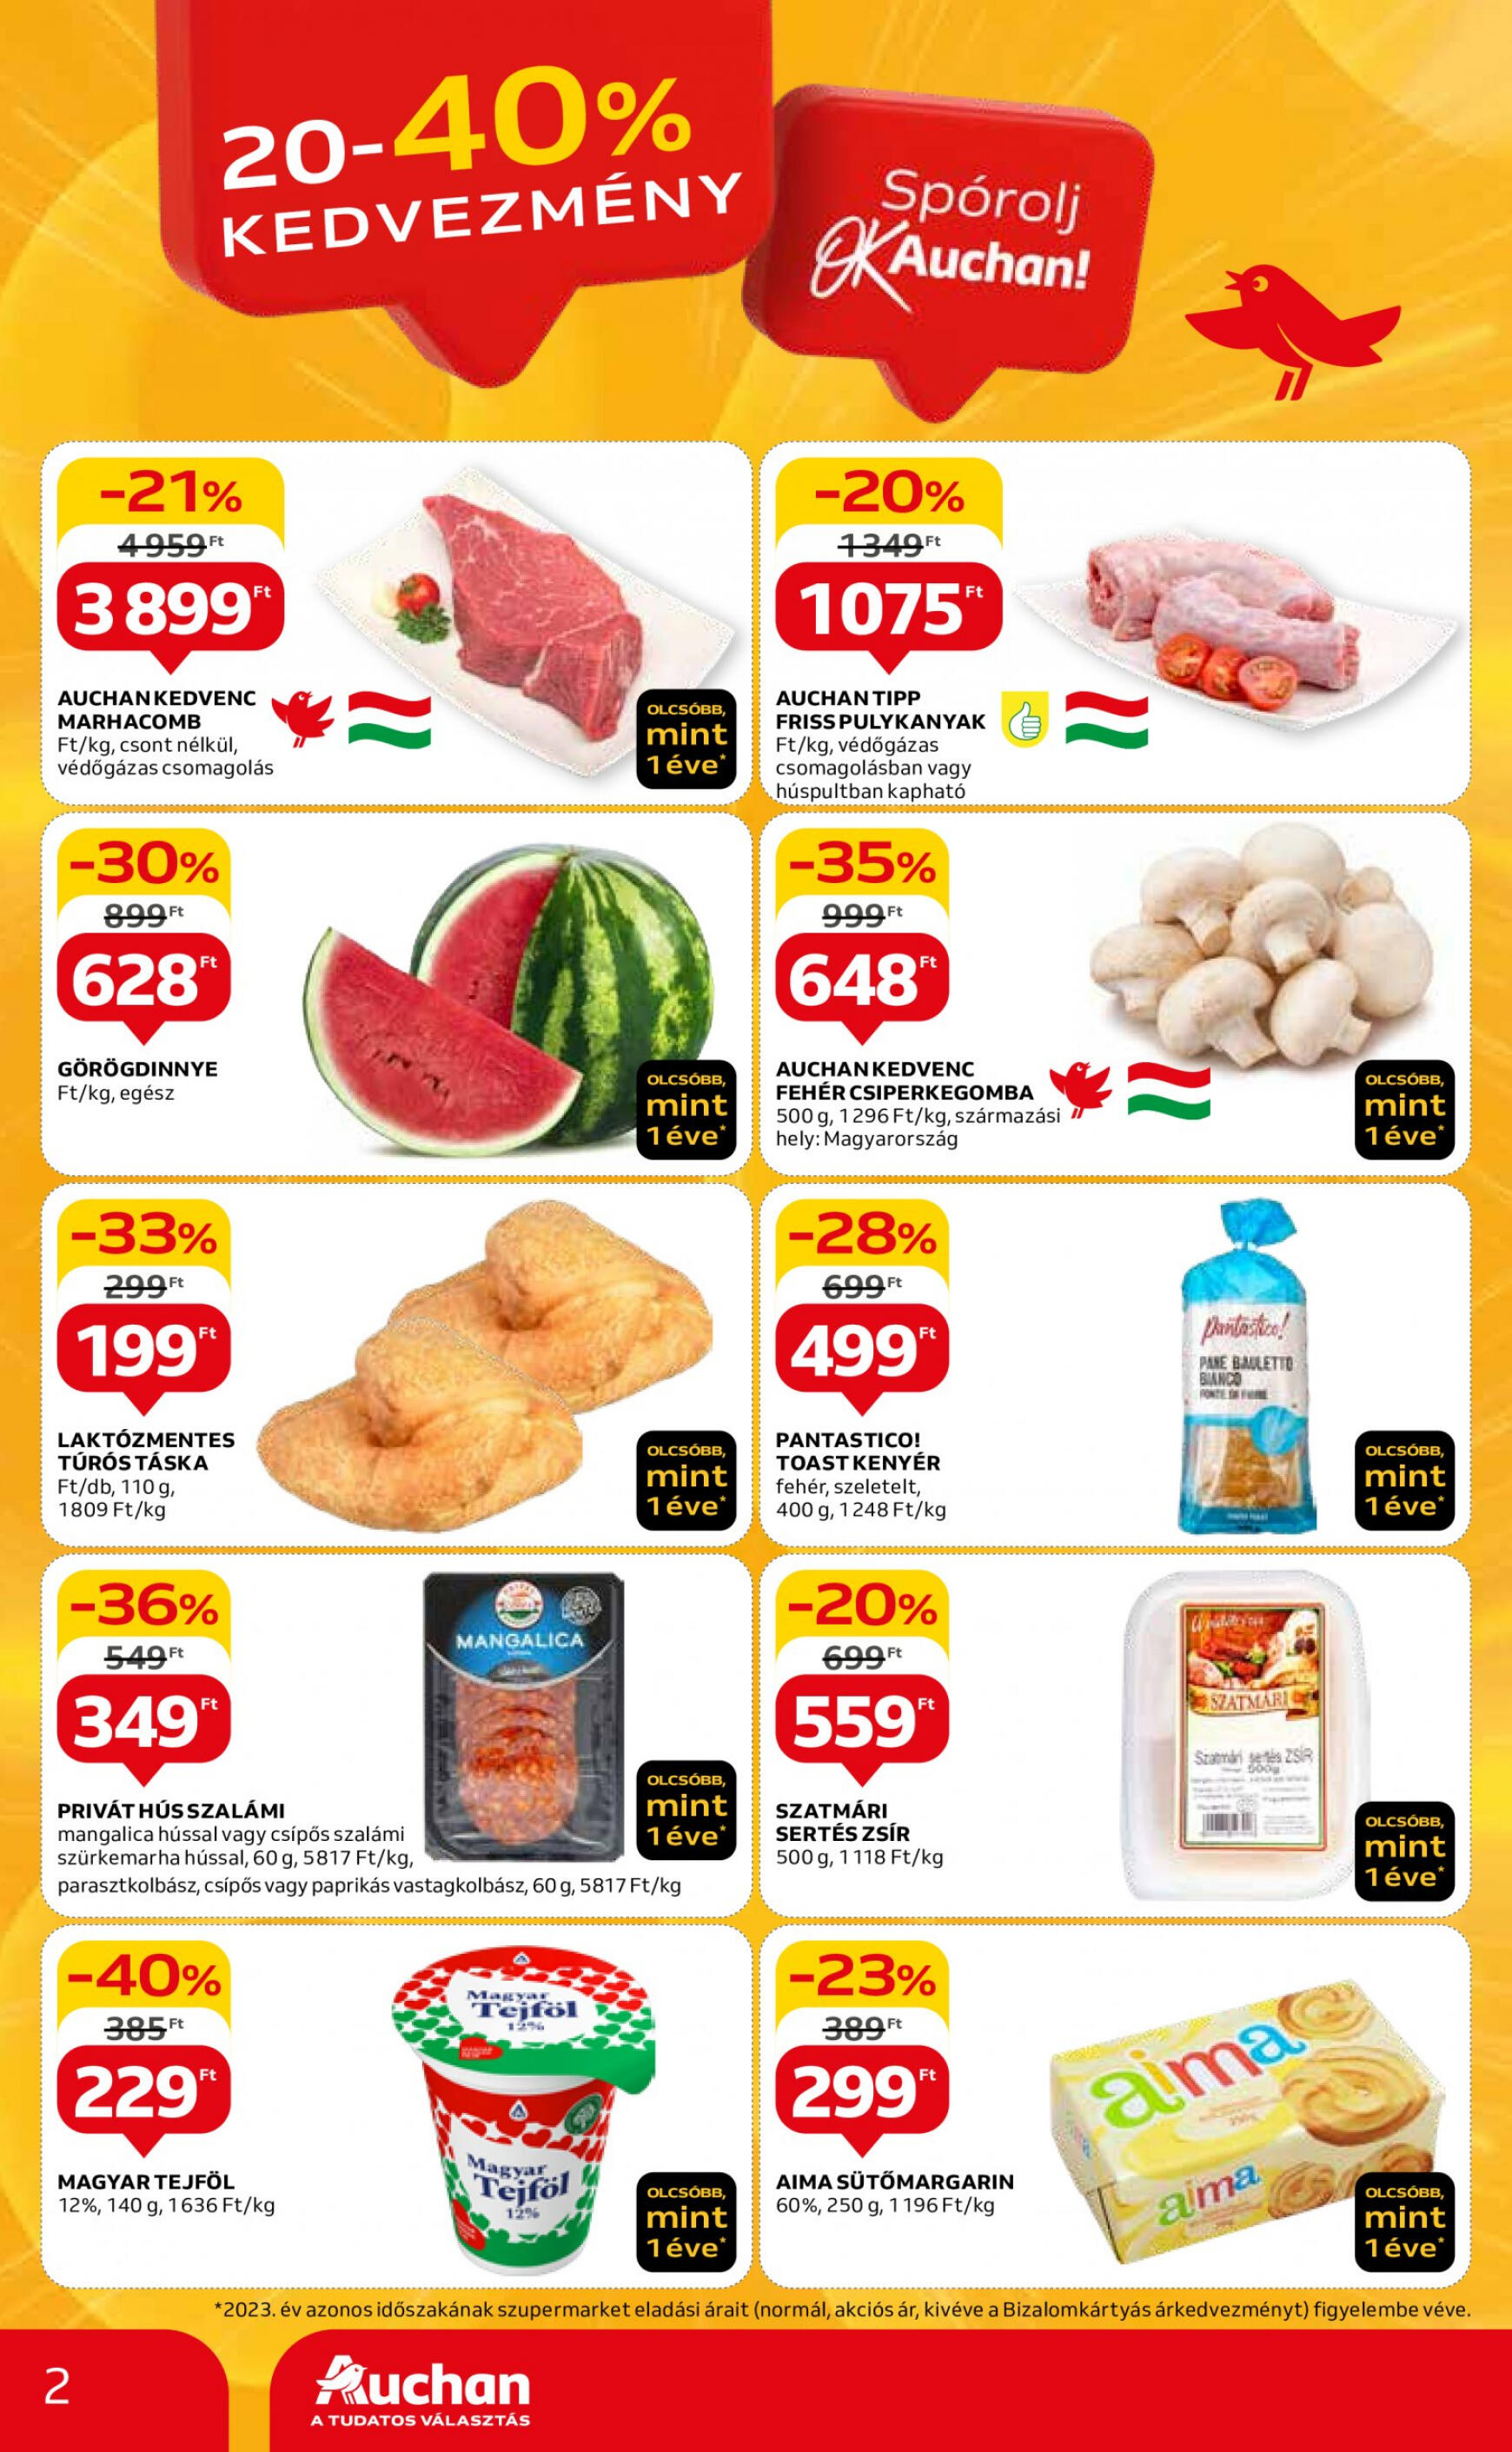 auchan - Aktuális újság Auchan szupermarket 04.18. - 04.24. - page: 2